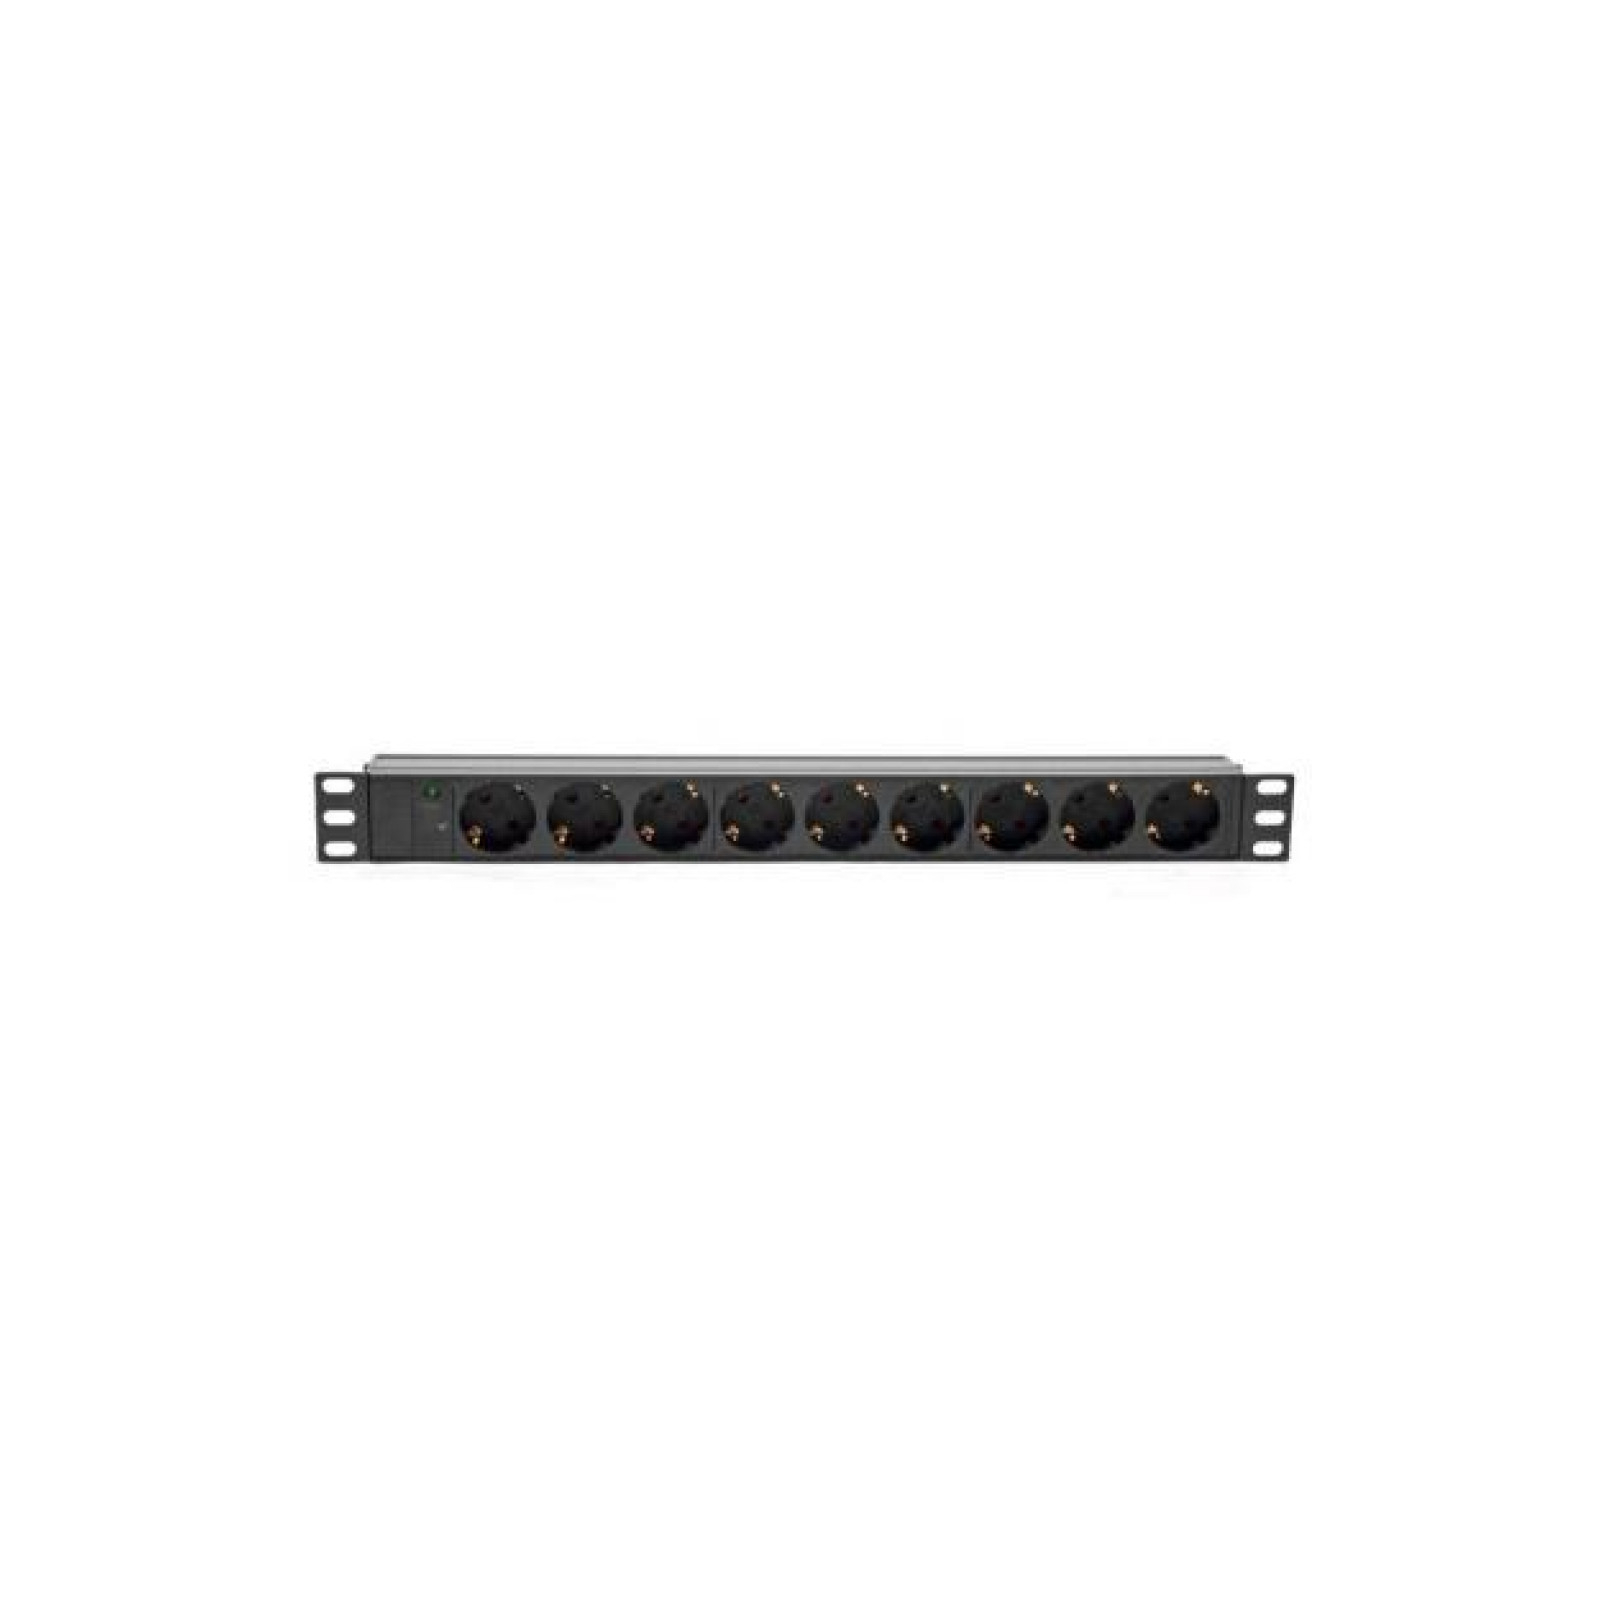 Силовой блок Ritar 19" 9 розеток, кабель 1.8m алюм. корпус без выключатя (1U-M9-K-GER / 00499)